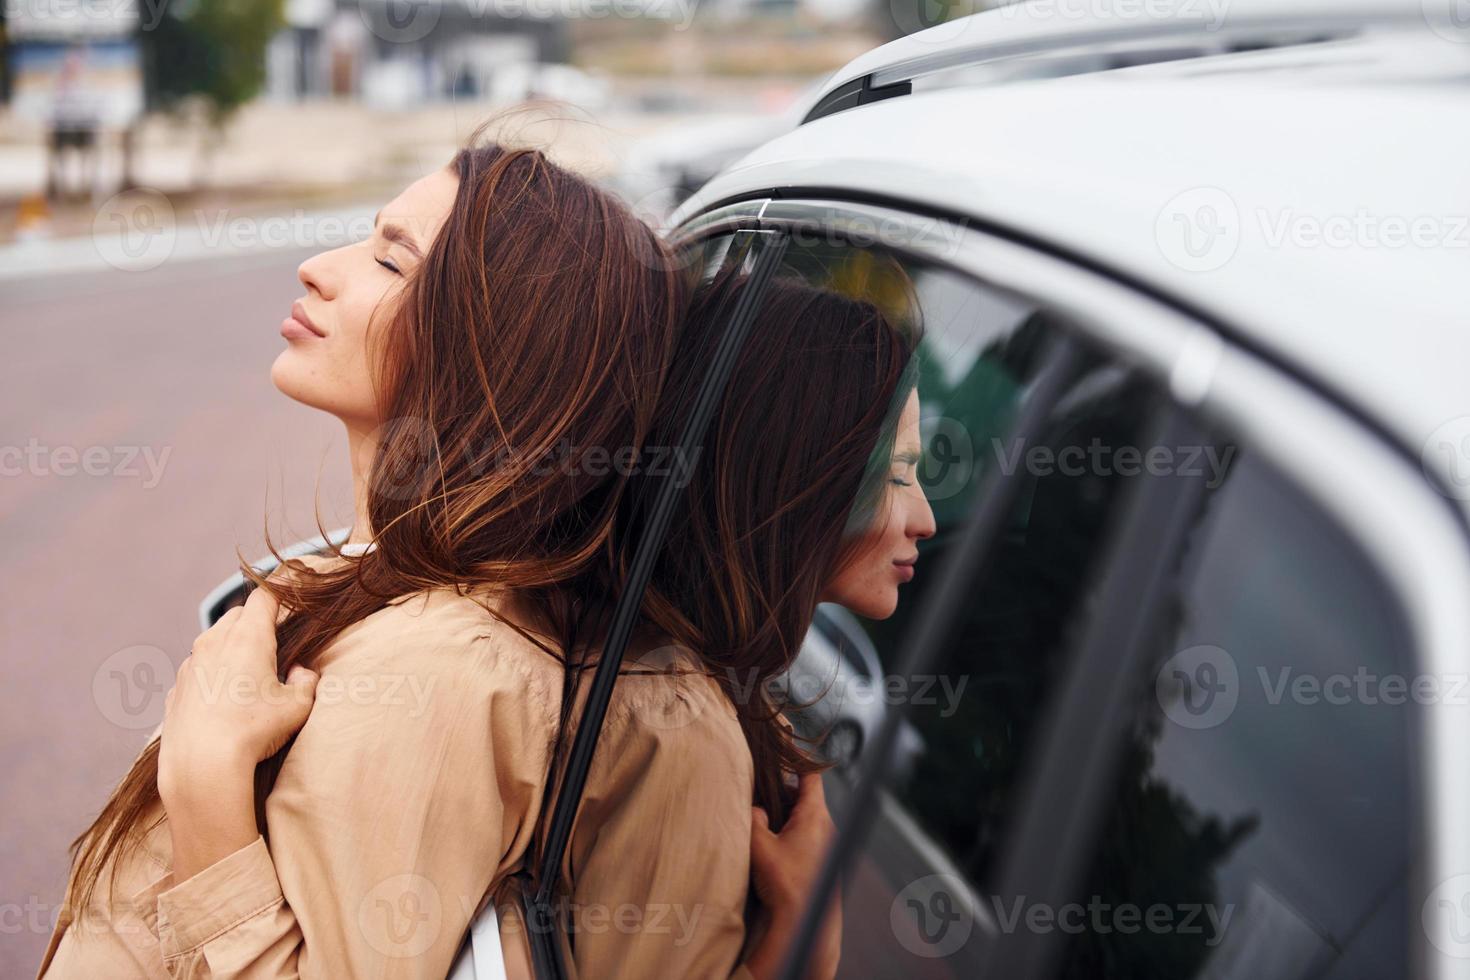 se apoya en la puerta. mujer joven hermosa de moda y su automóvil moderno foto